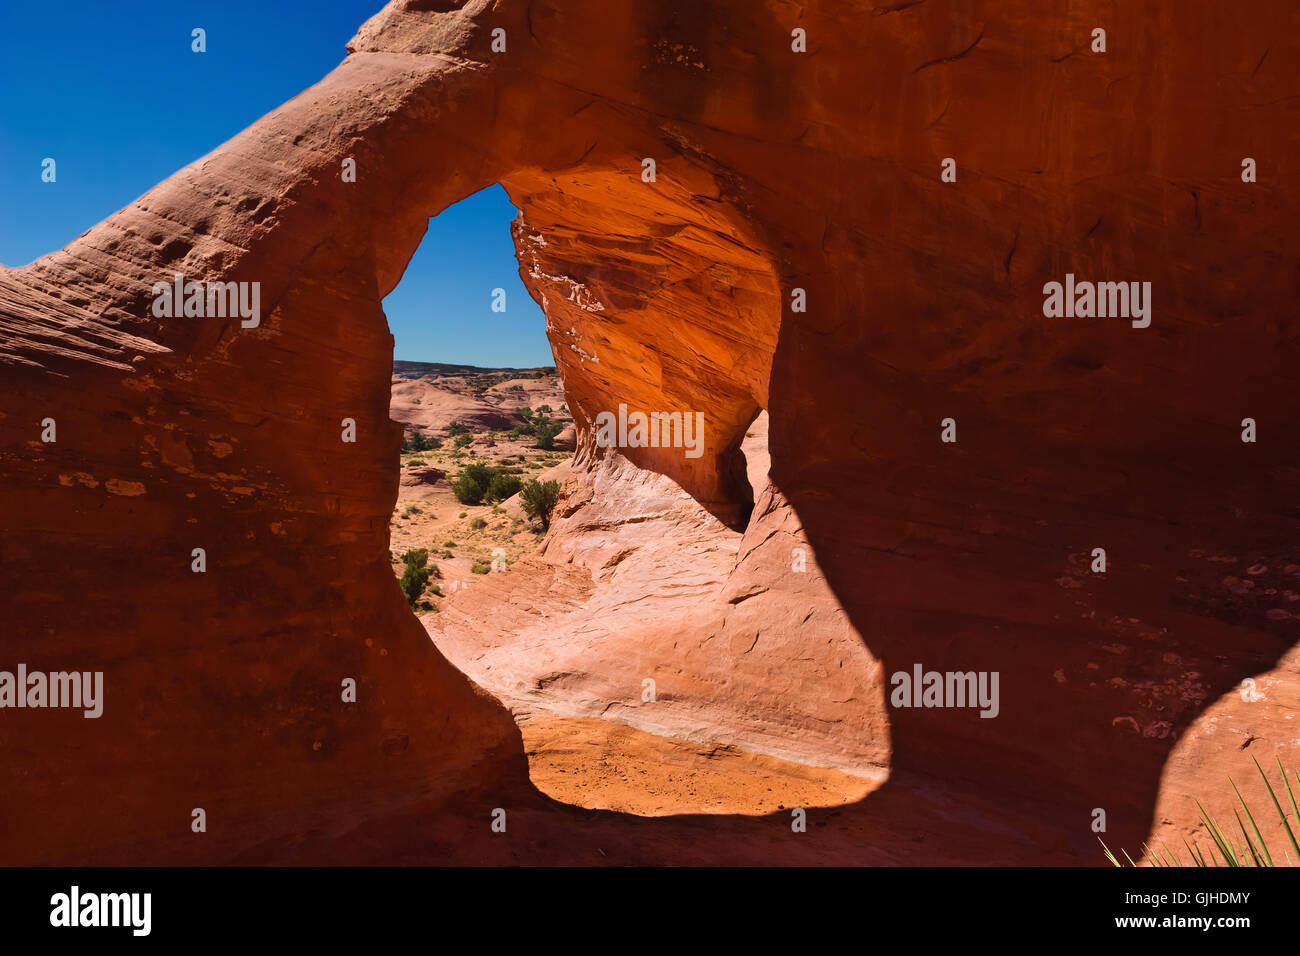 Maison Carrée arch rock formation, vallée de mystère, Arizona, États-Unis d'Amérique Banque D'Images